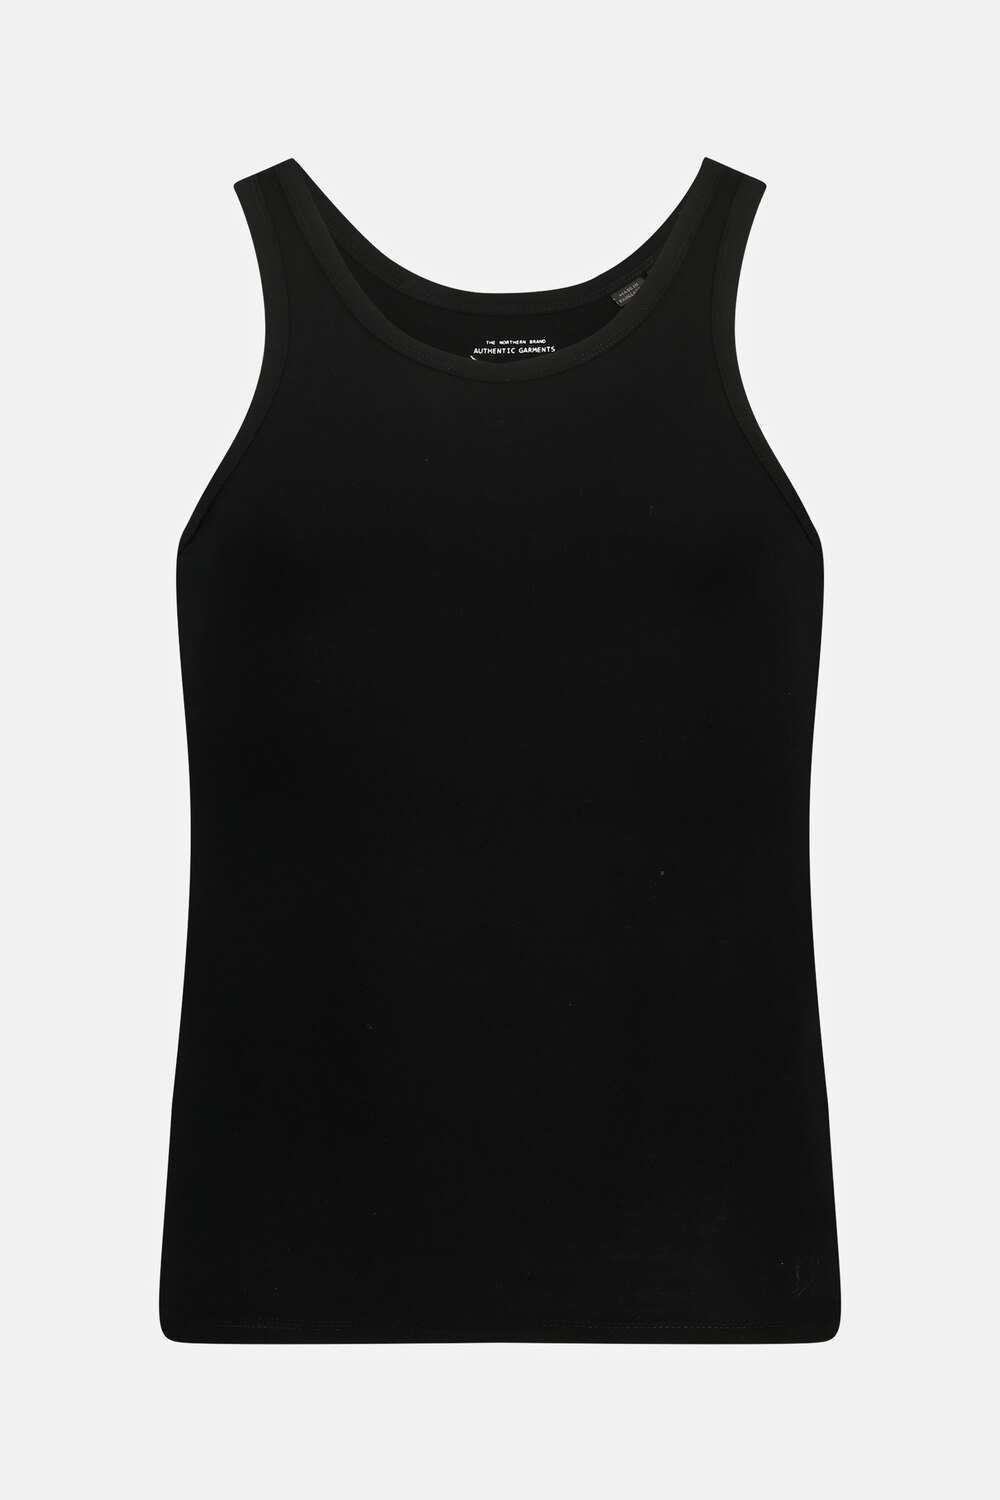 Grote Maten Onderhemd, Heren, zwart, Maat: 4XL, Katoen, JP1880